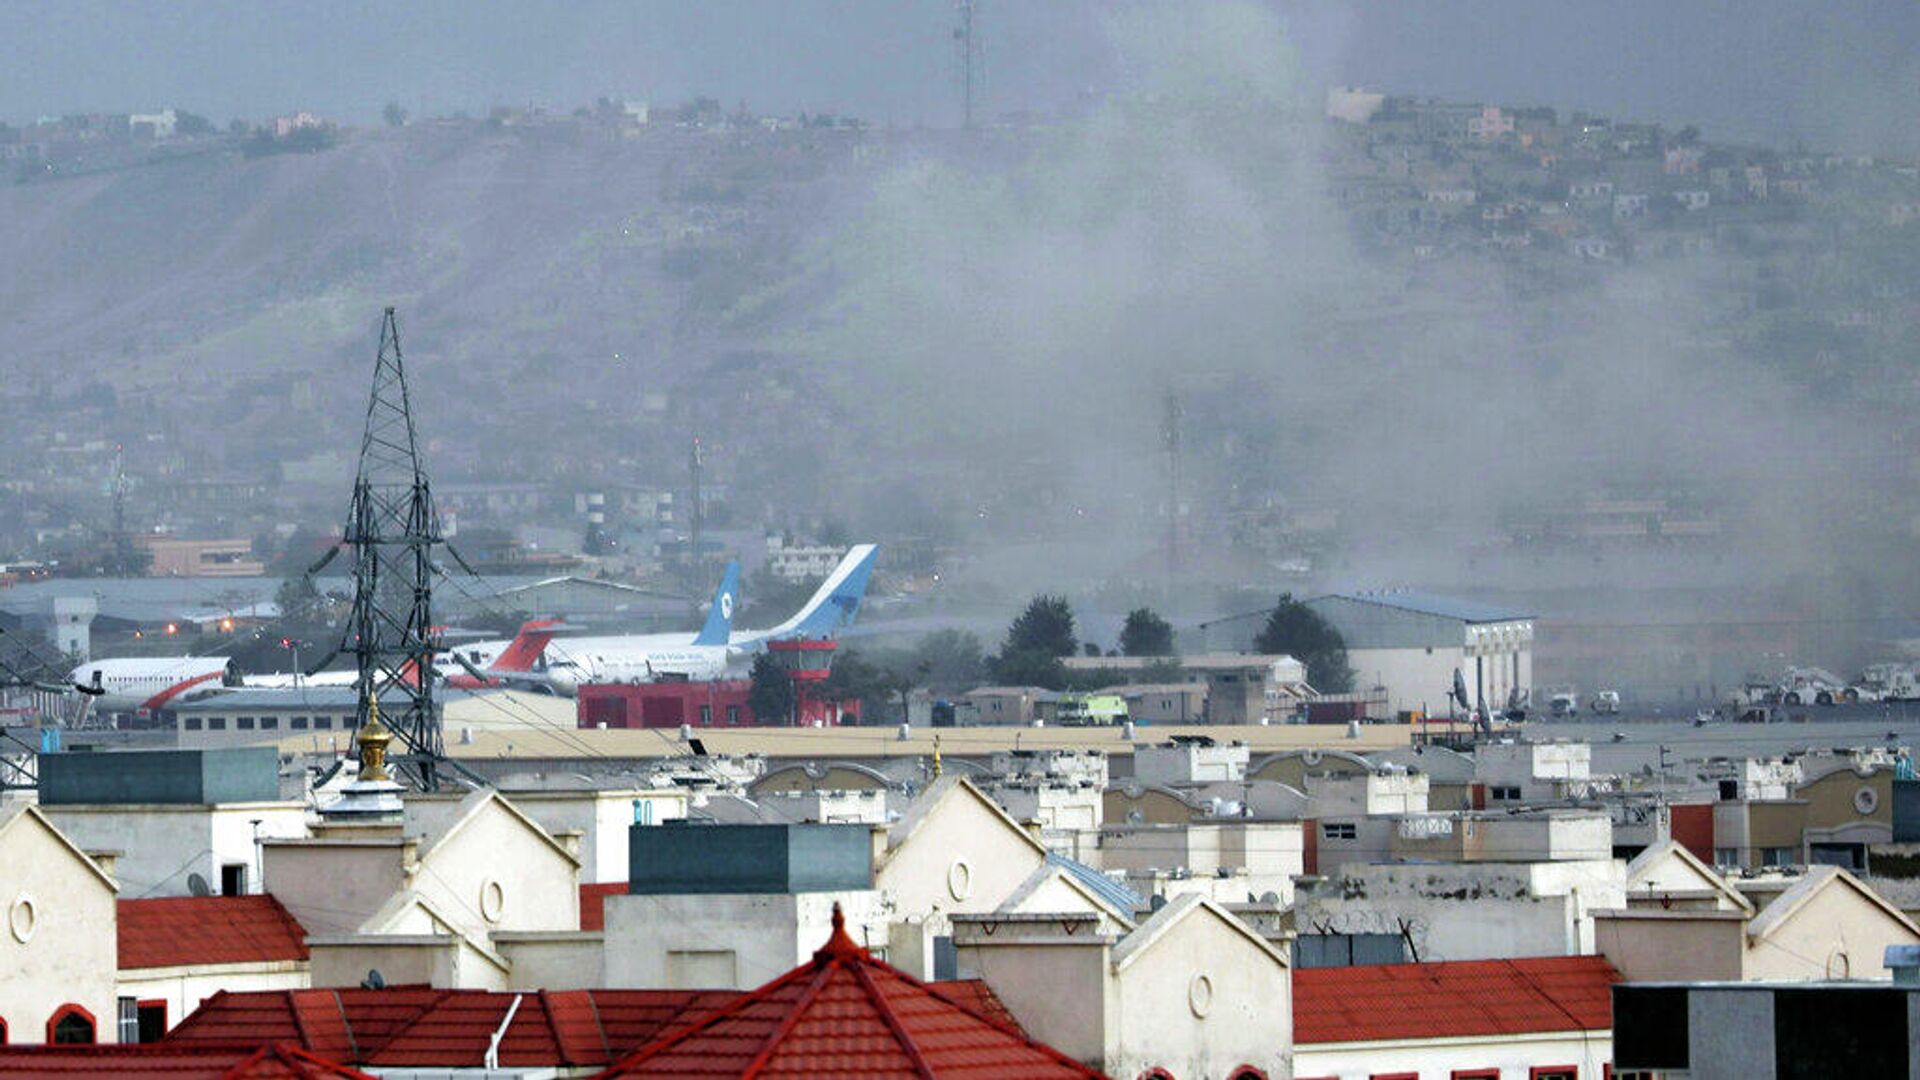 Дым поднимается от взрыва возле аэропорта в Кабуле, Афганистан, в четверг, 26 августа 2021 года. - РИА Новости, 1920, 27.08.2021